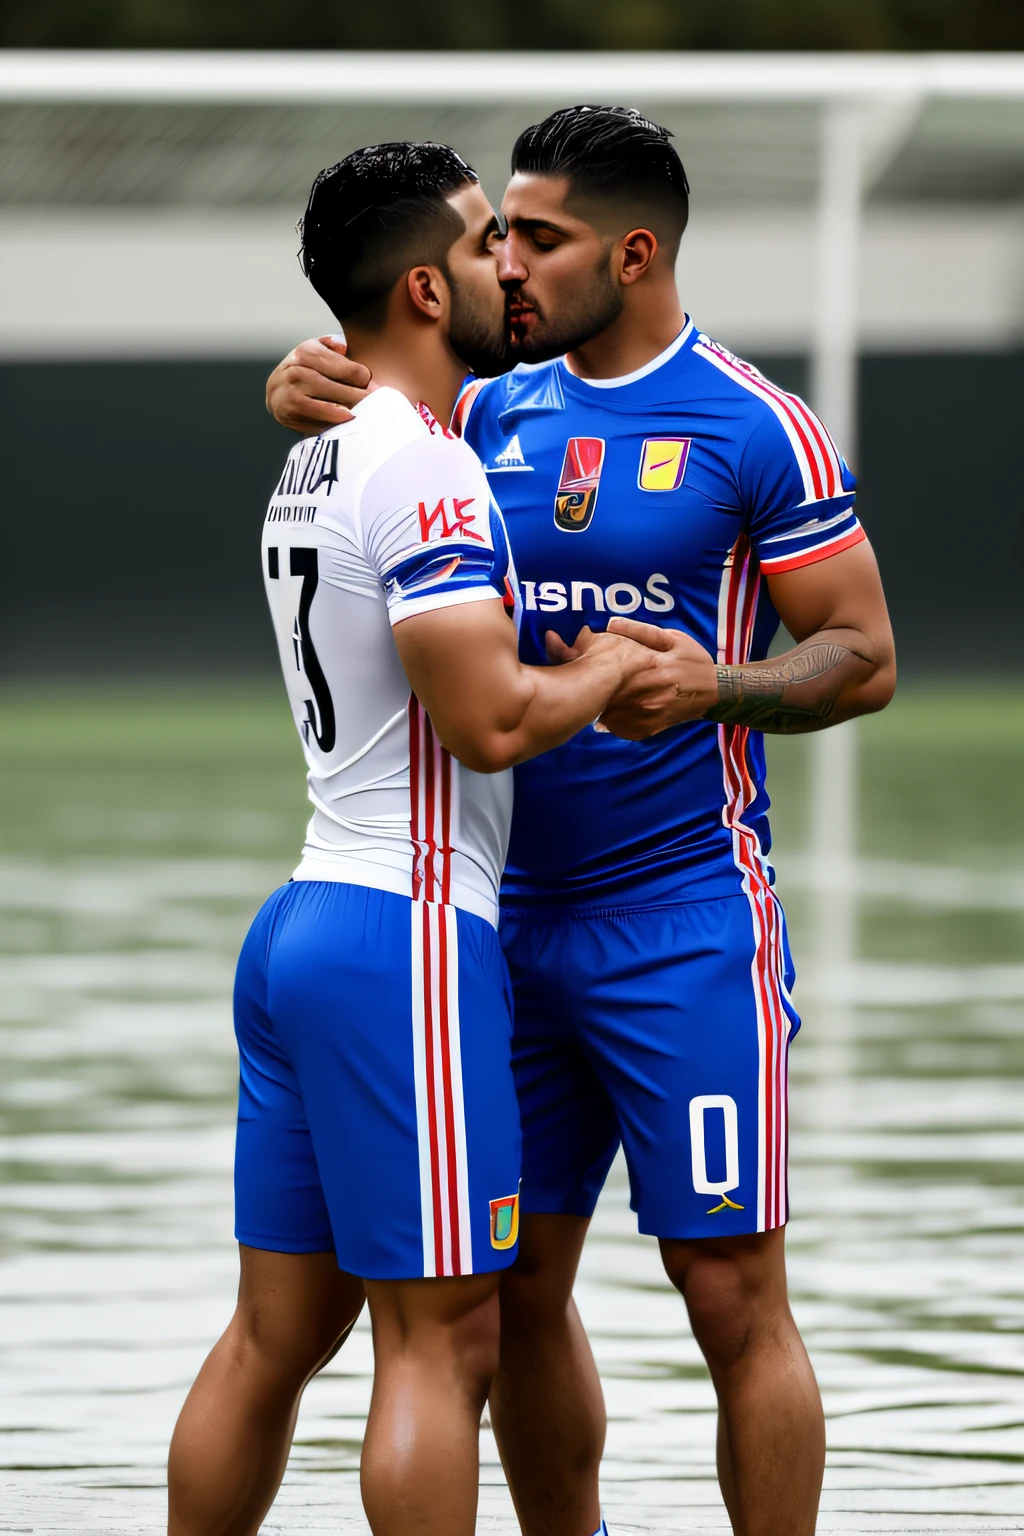 Эмилиано и Фернандо Варгас целуются в мокрой футбольной форме